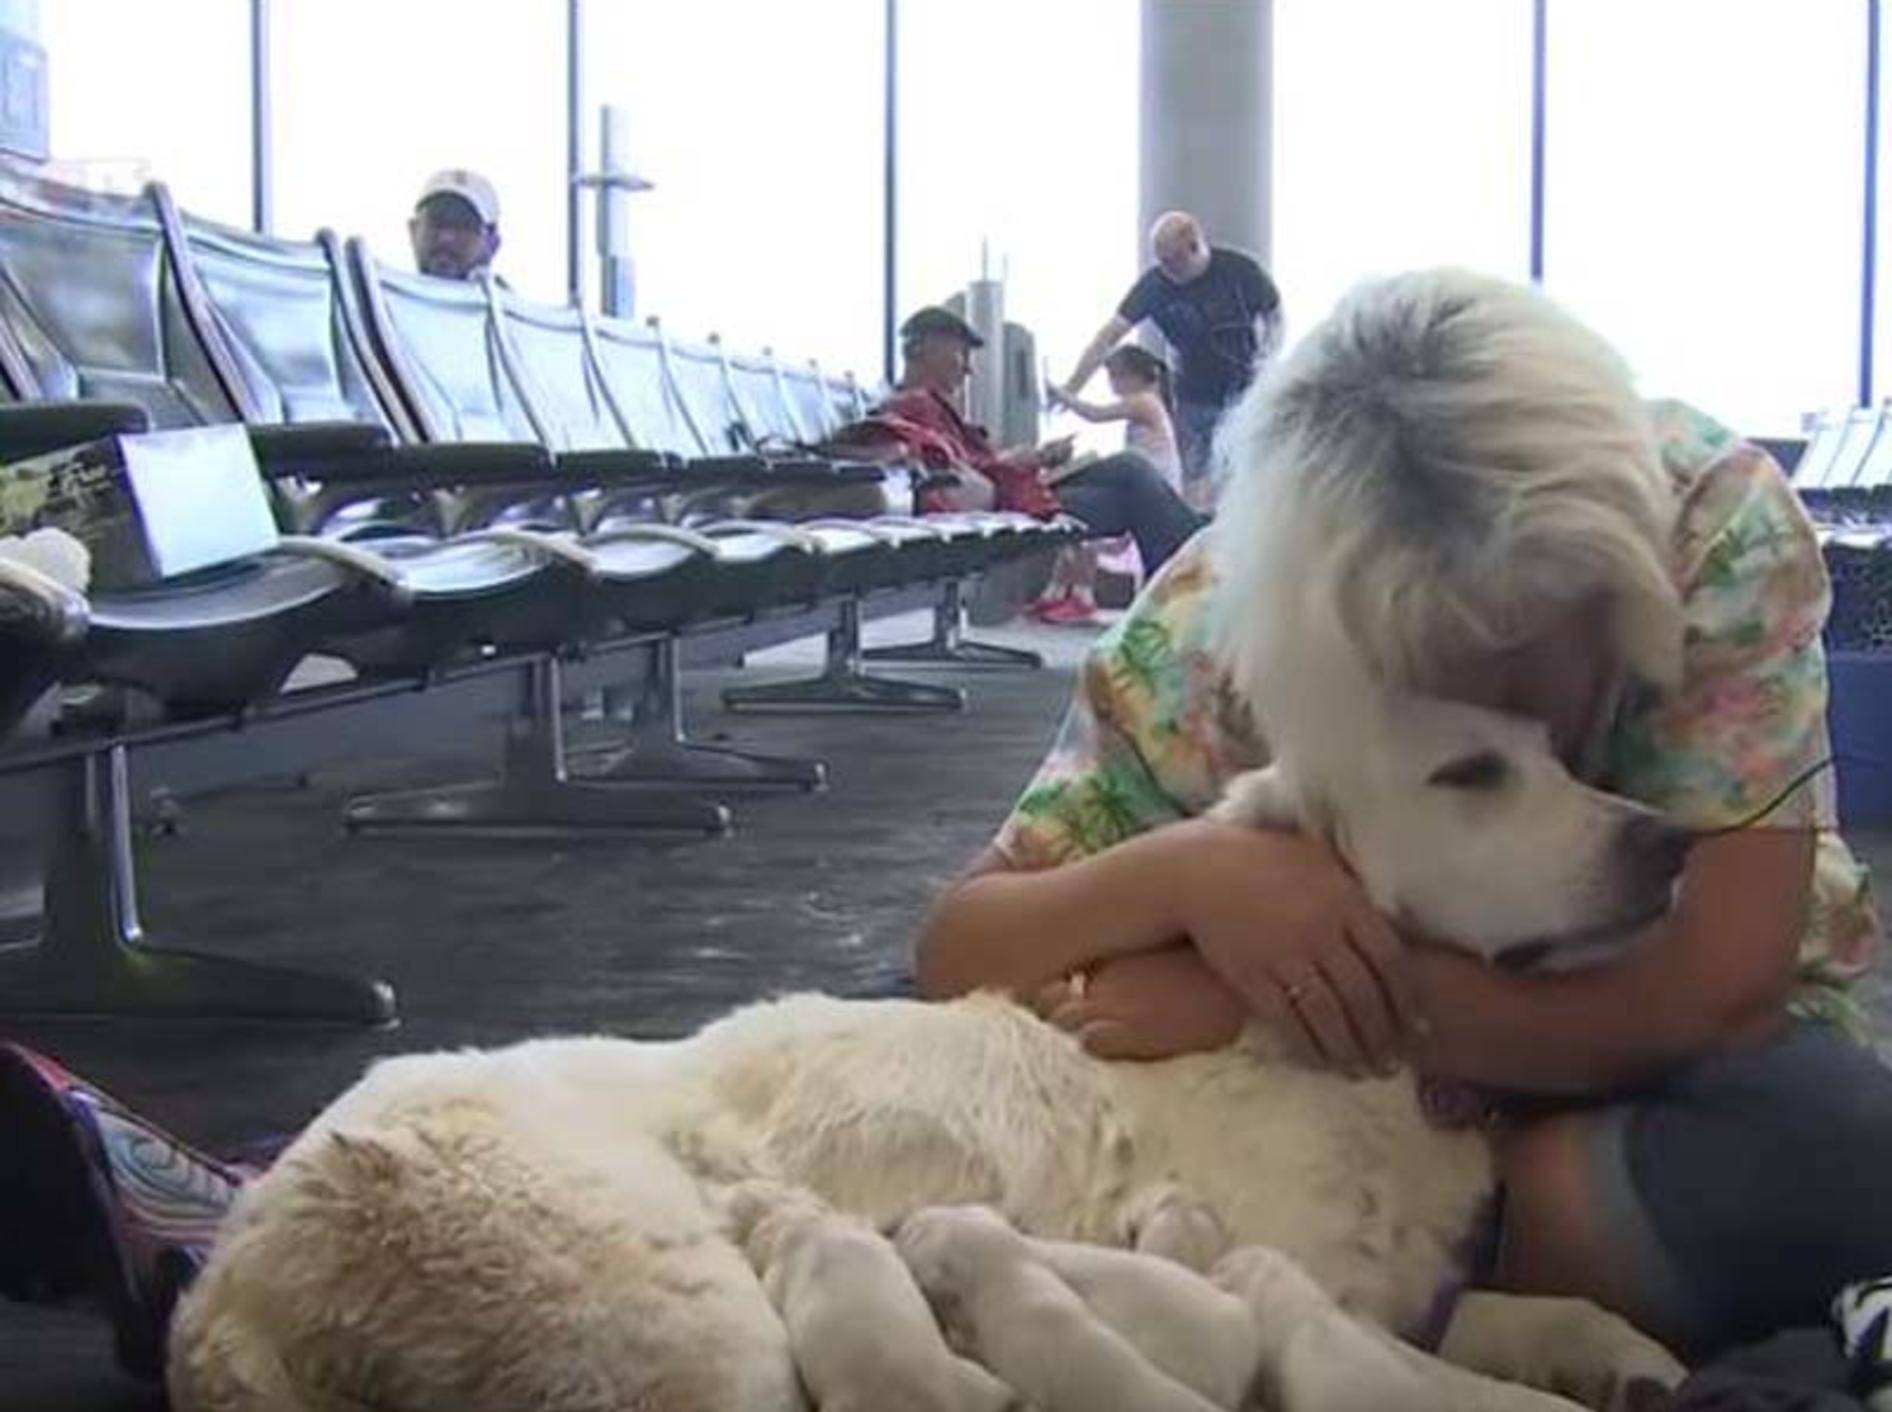 Hündin Ellie hat ihren Nachwuchs am Flughafen zur Welt gebracht - Bild: YouTube / FOX 13 News - Tampa Bay